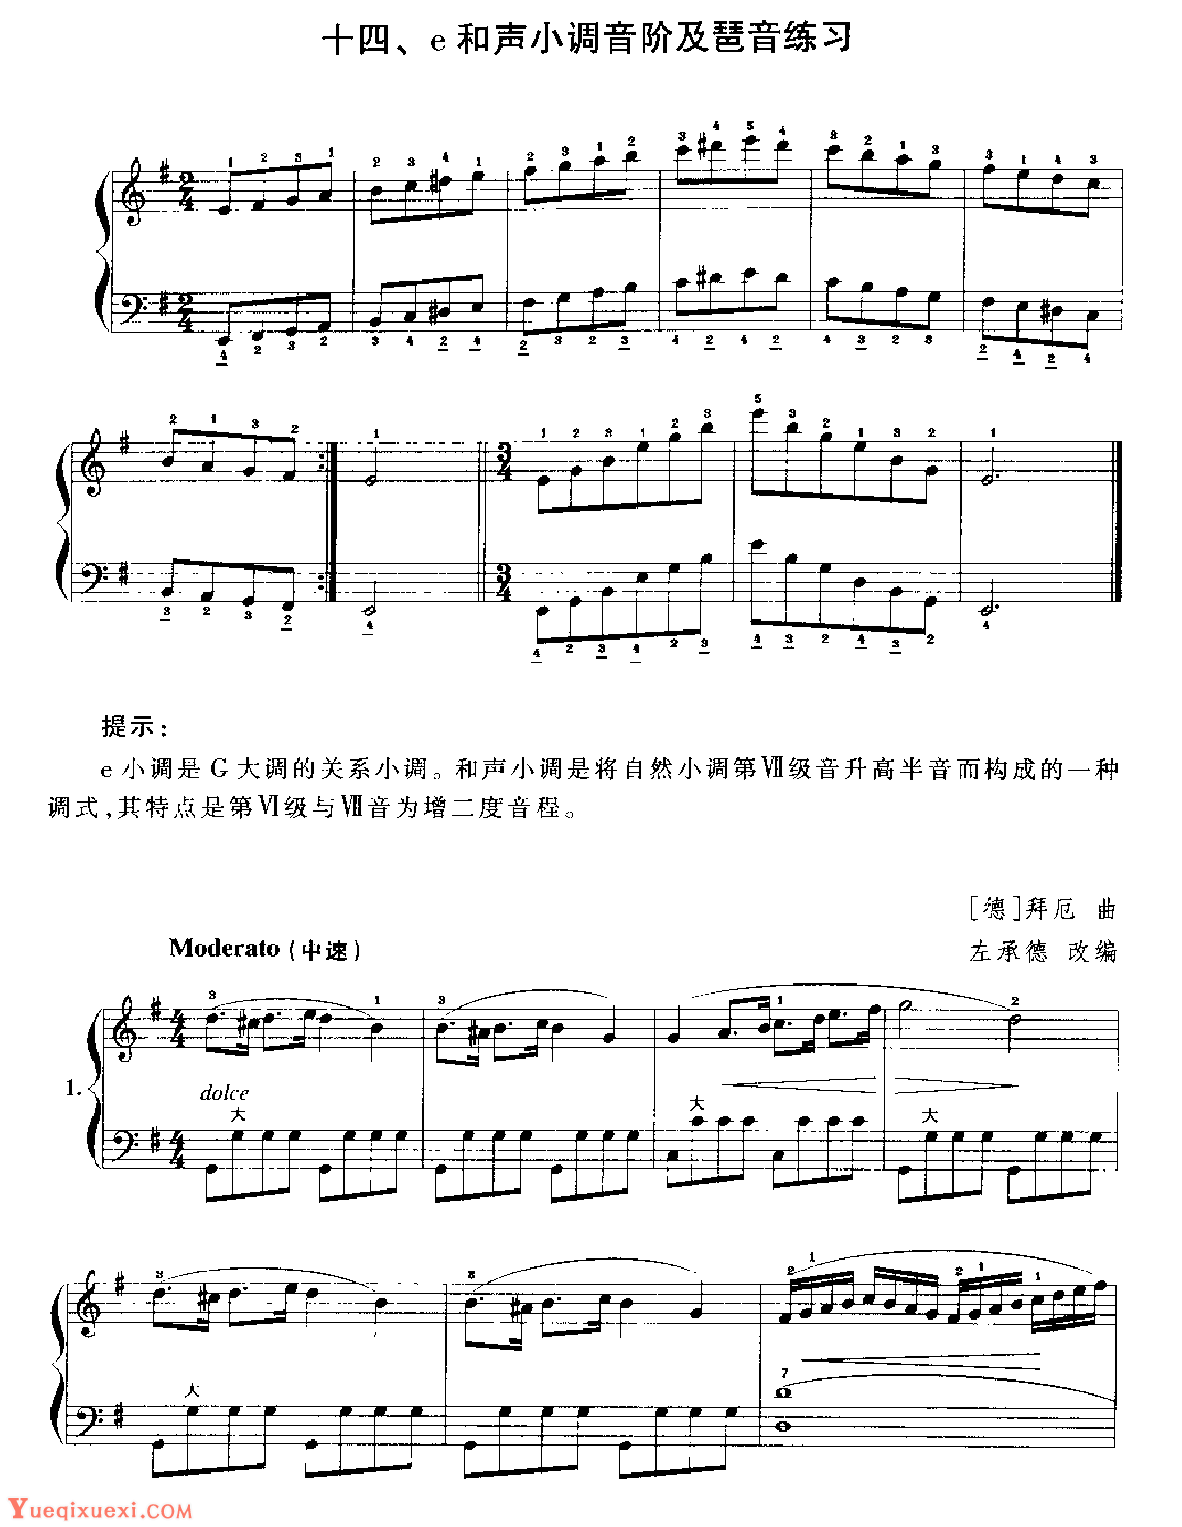 手风琴e和声小调音阶及琶音练习1